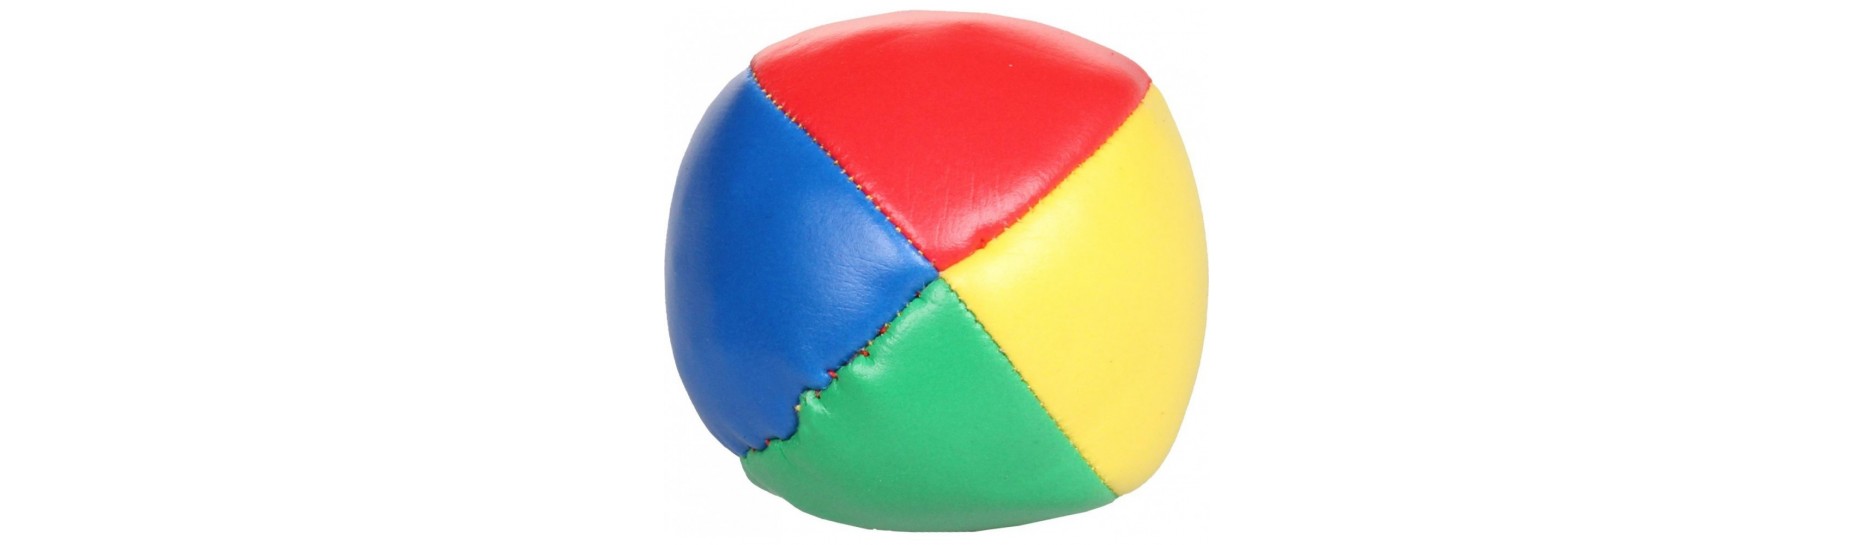 Frisbee, juggling